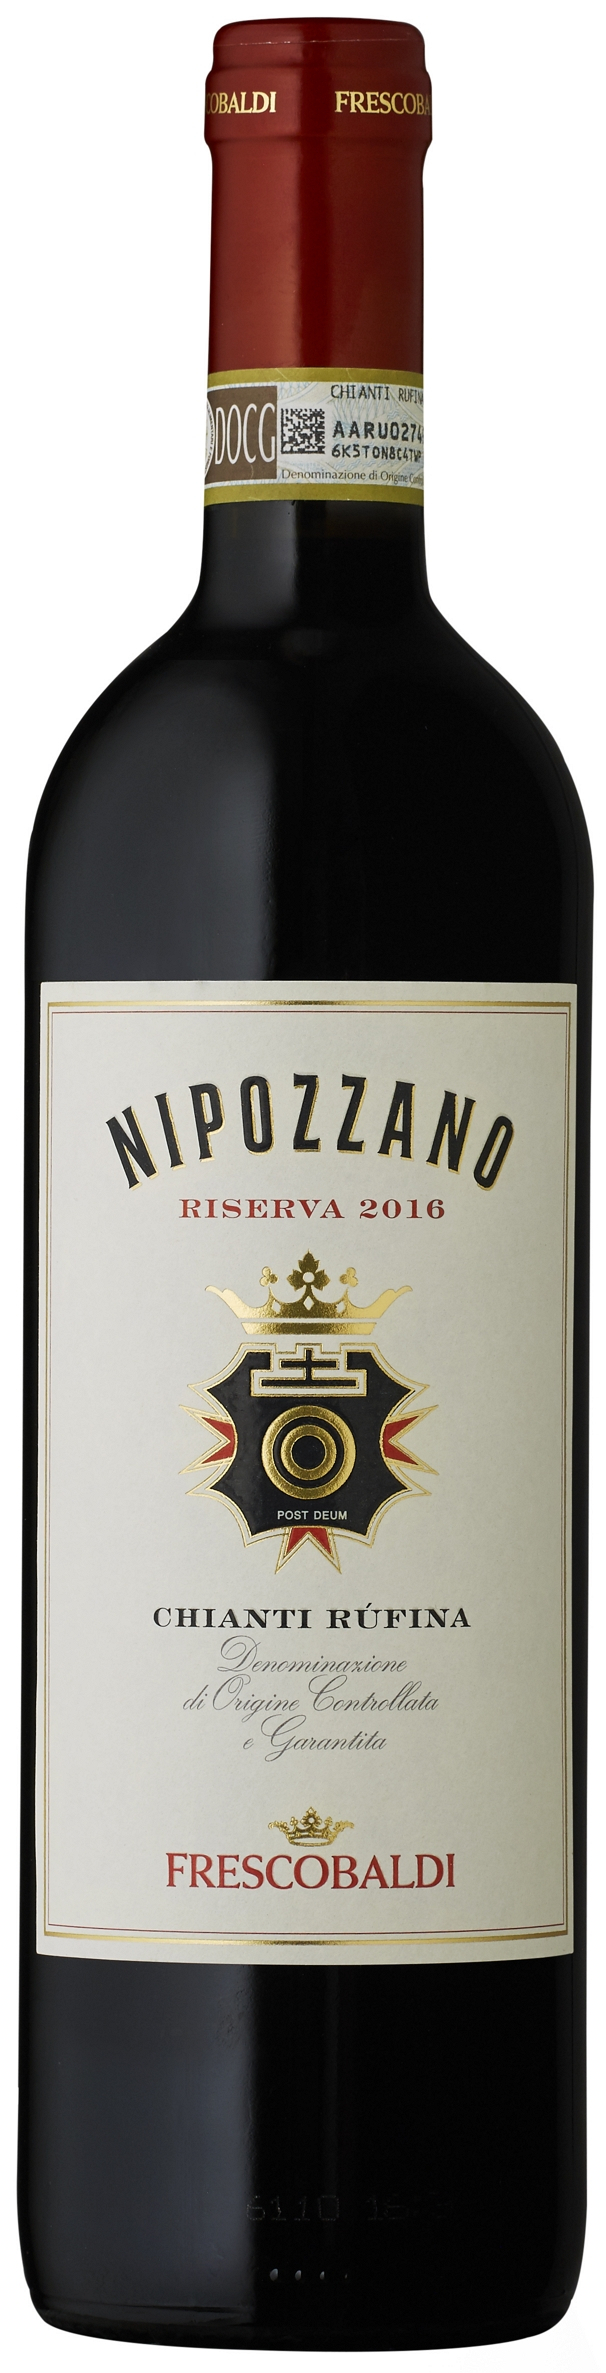 신세계L&B, 이탈리아산 니포짜노 와인 이마트서 30% 할인